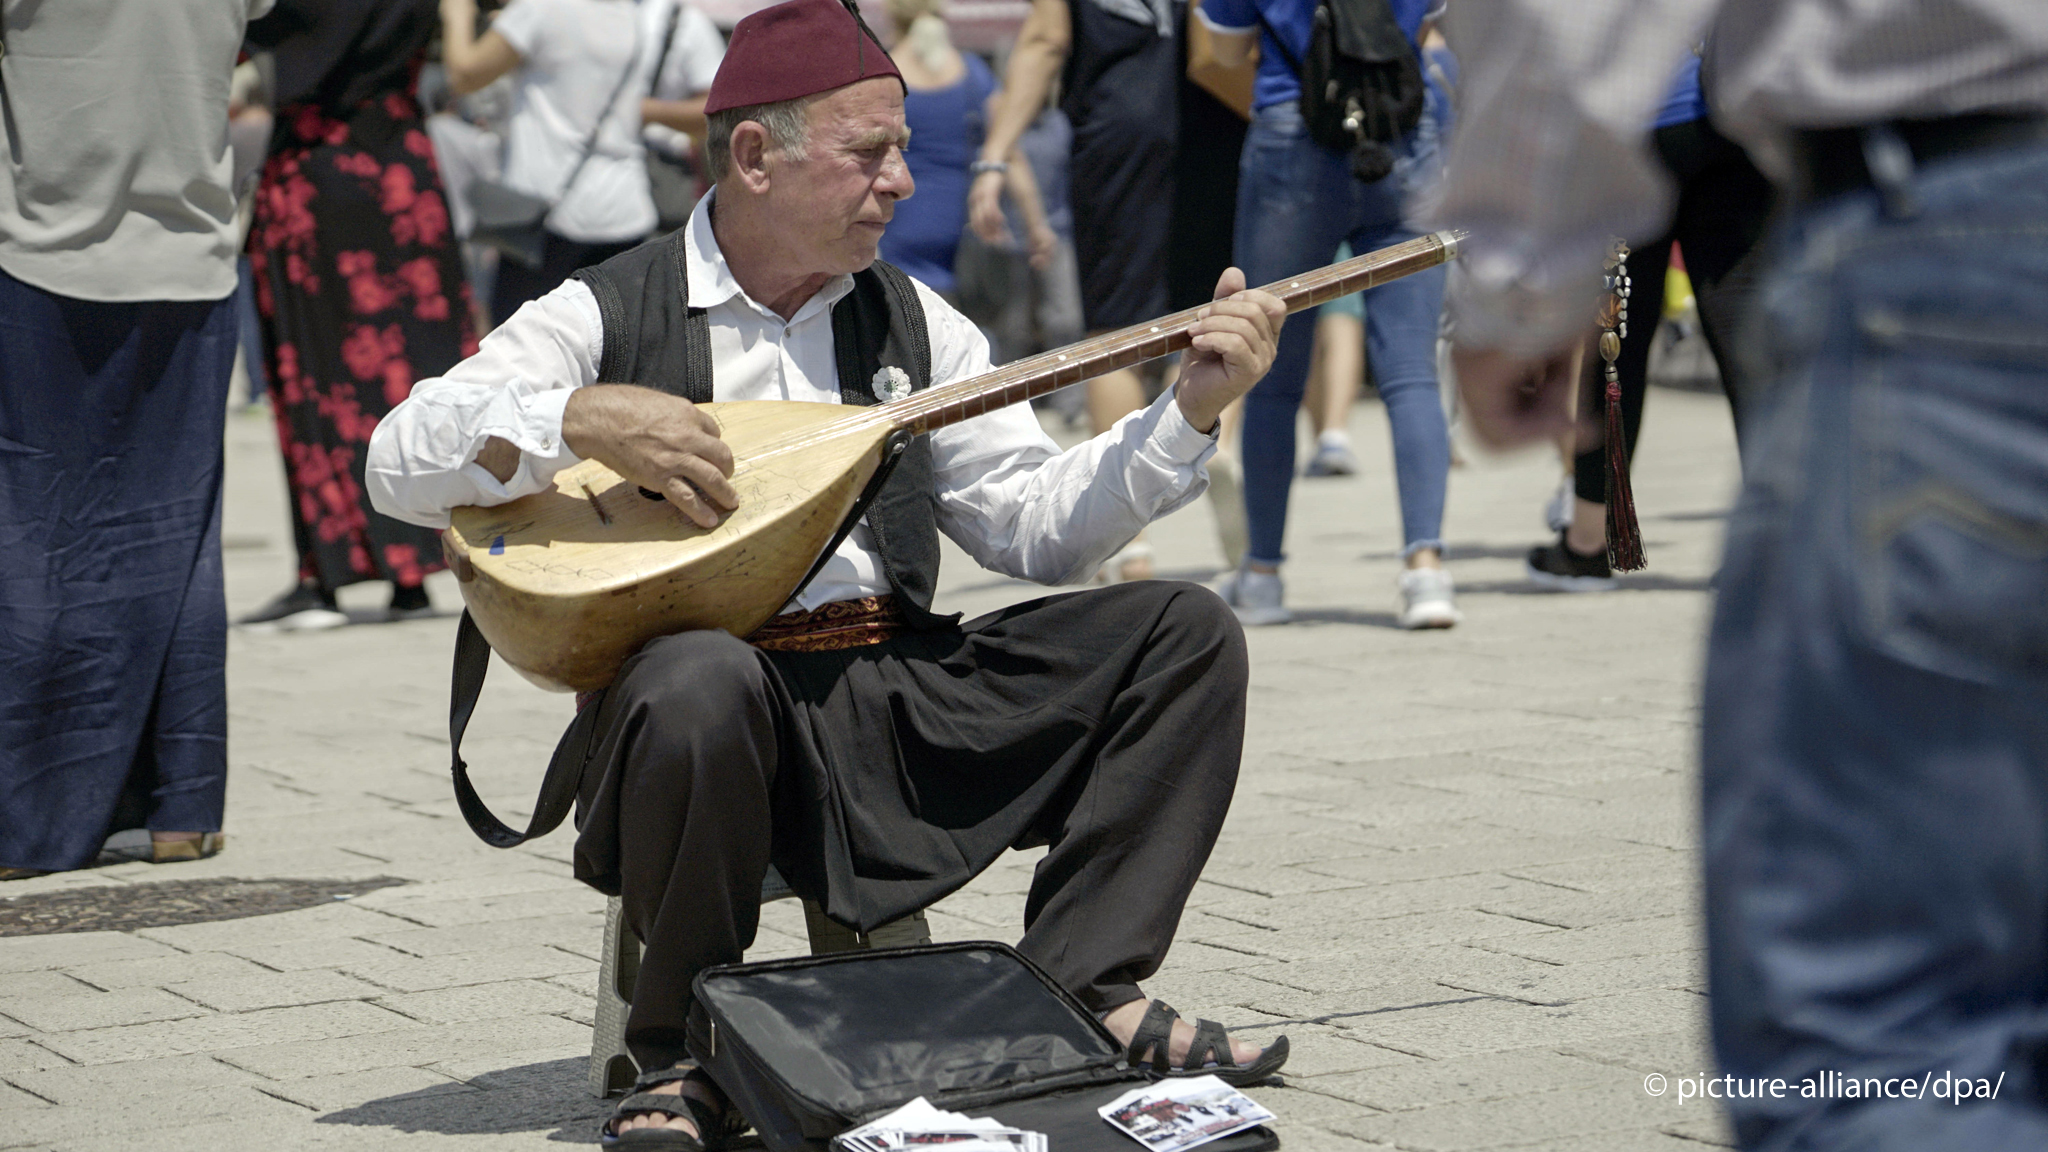 رجل يعزف عود الساز – تركيا. A man plays the baglama in the middle of a crowd in the sunshine (photo: picture alliance/dpa)